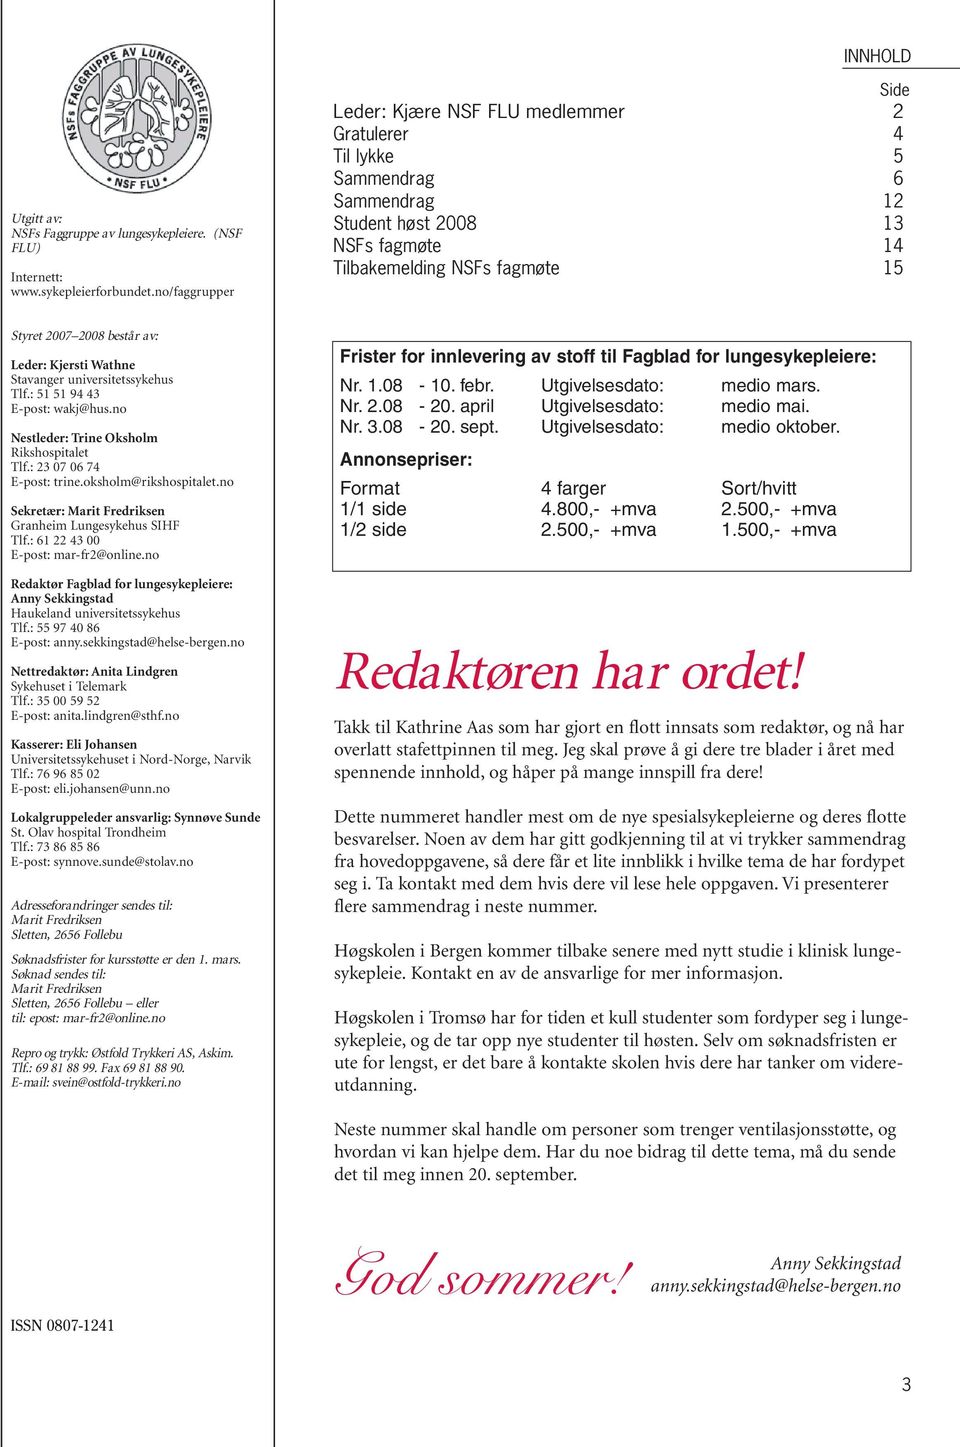 Stavanger universitetssykehus Tlf.: 51 51 94 43 E-post: wakj@hus.no Nestleder: Trine Oksholm Rikshospitalet Tlf.: 23 07 06 74 E-post: trine.oksholm@rikshospitalet.